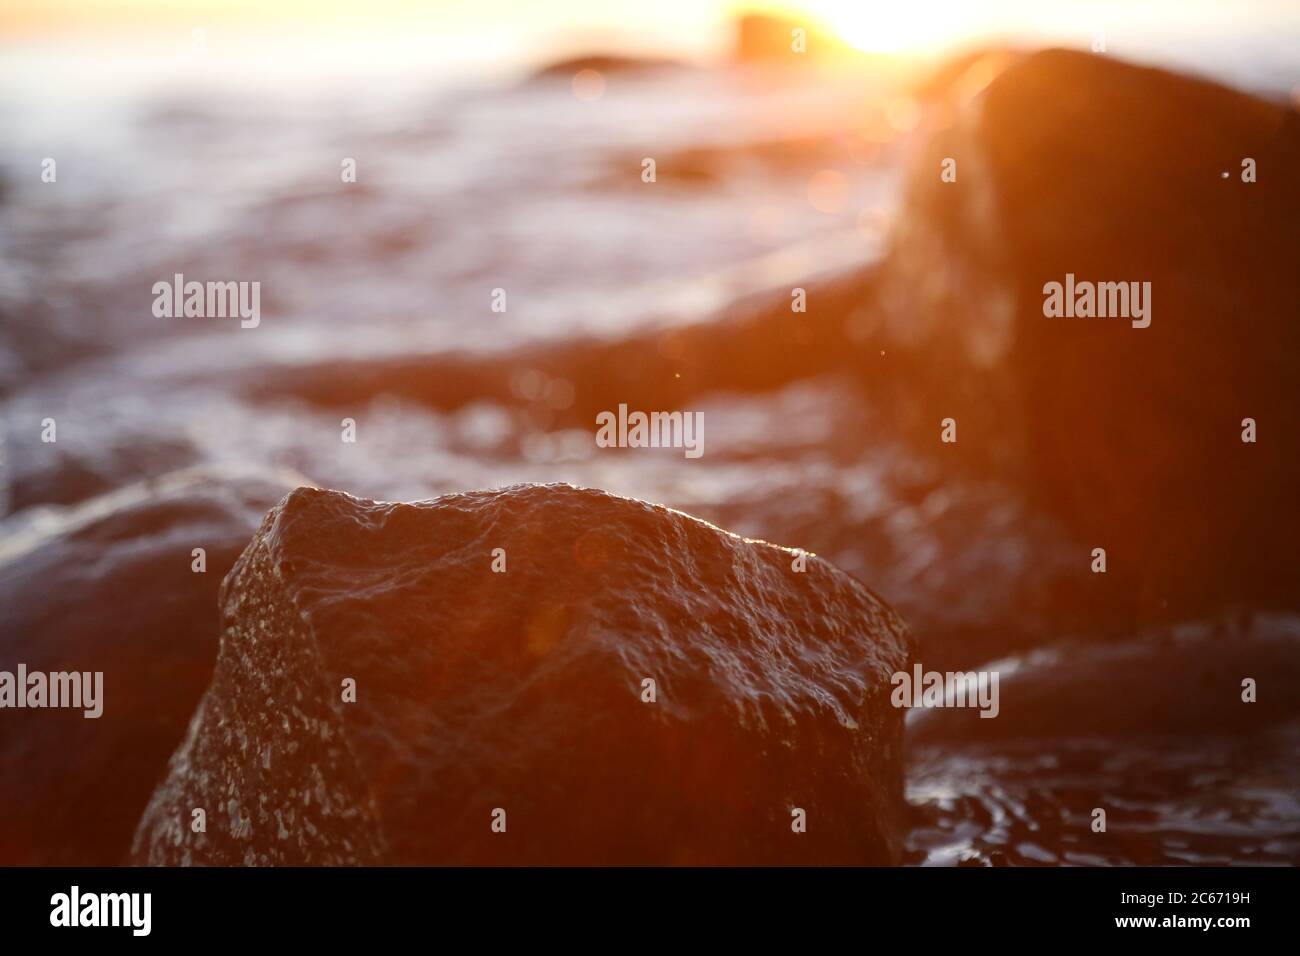 Steinige Strandsteine und Felsen, die abends in der Nähe beleuchtet sind, Sonnenuntergang und Sonnenaufgang Stockfoto